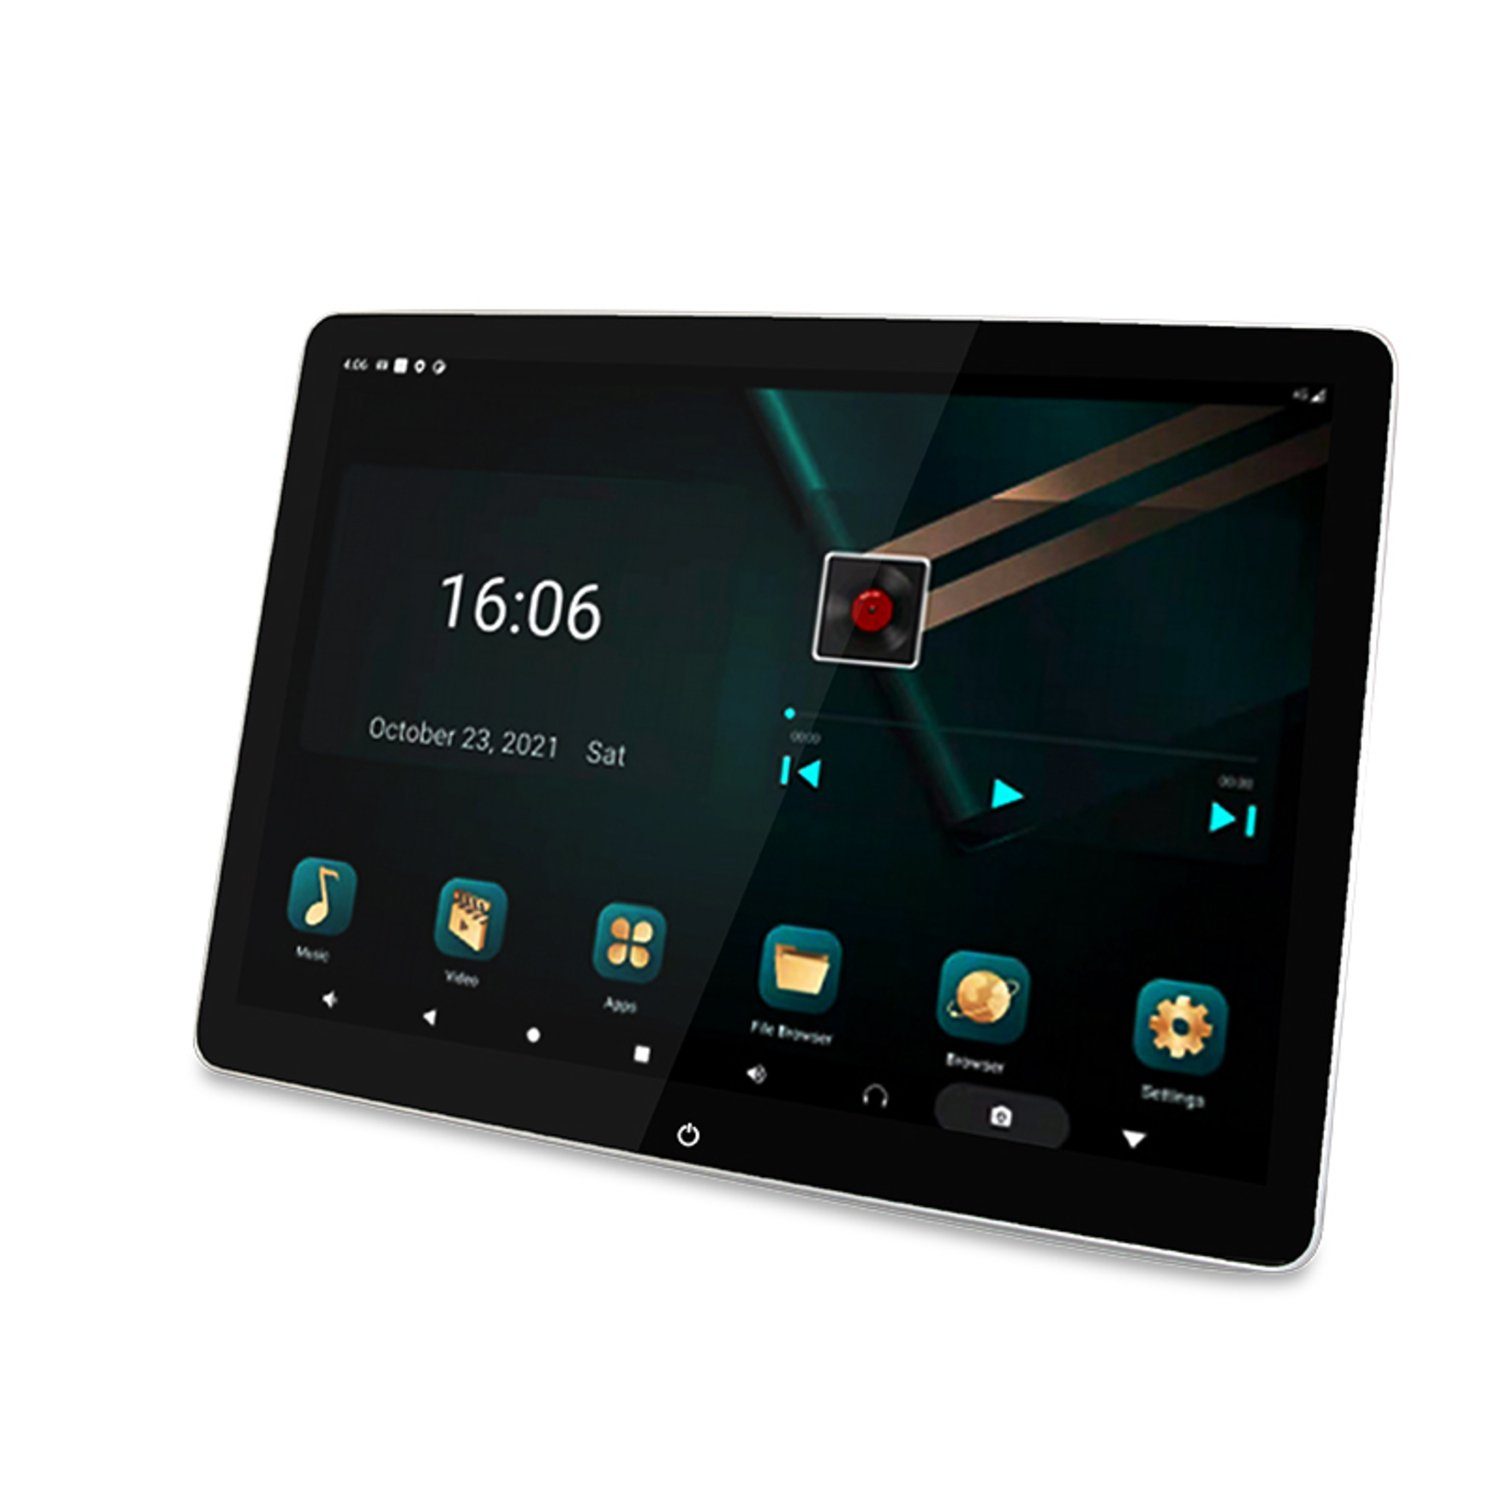 Android LTE Monitor 2x Kopfstützen TAFFIO 12"Touch WiFi Bluetooth 4G SET Auto Navigationsgerät